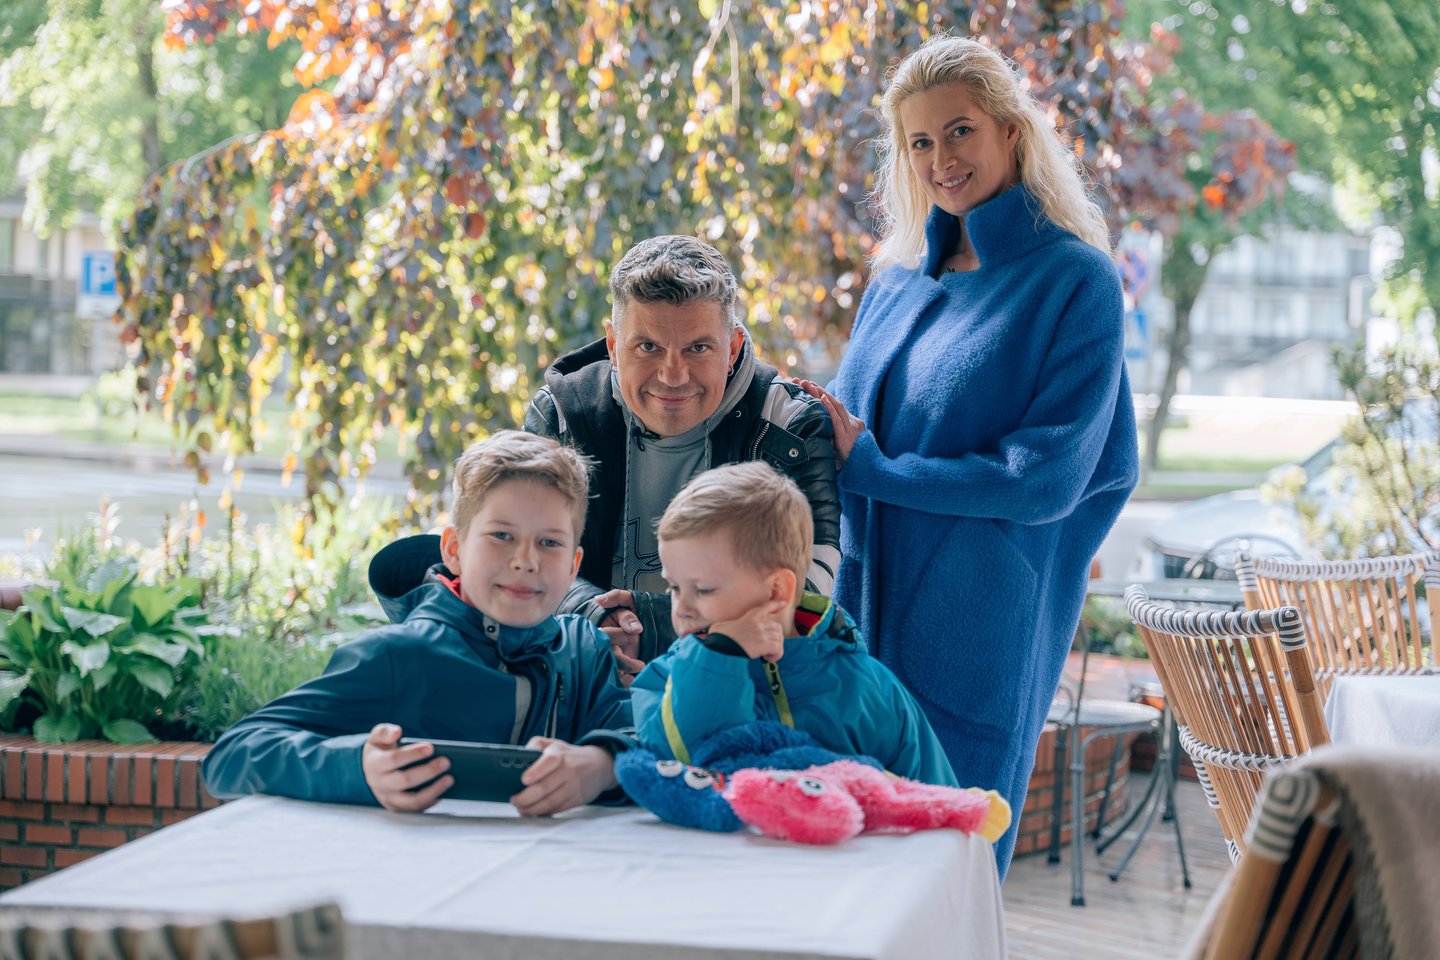  Renata ir Deivis Norvilai su sūnumis Emiliu ir Rėjumi visą vasarą gyvens Druskininkuose.<br>Tomas Petrovkis/tomasfoto.lt ir Jonas Staškauskas nuotr.